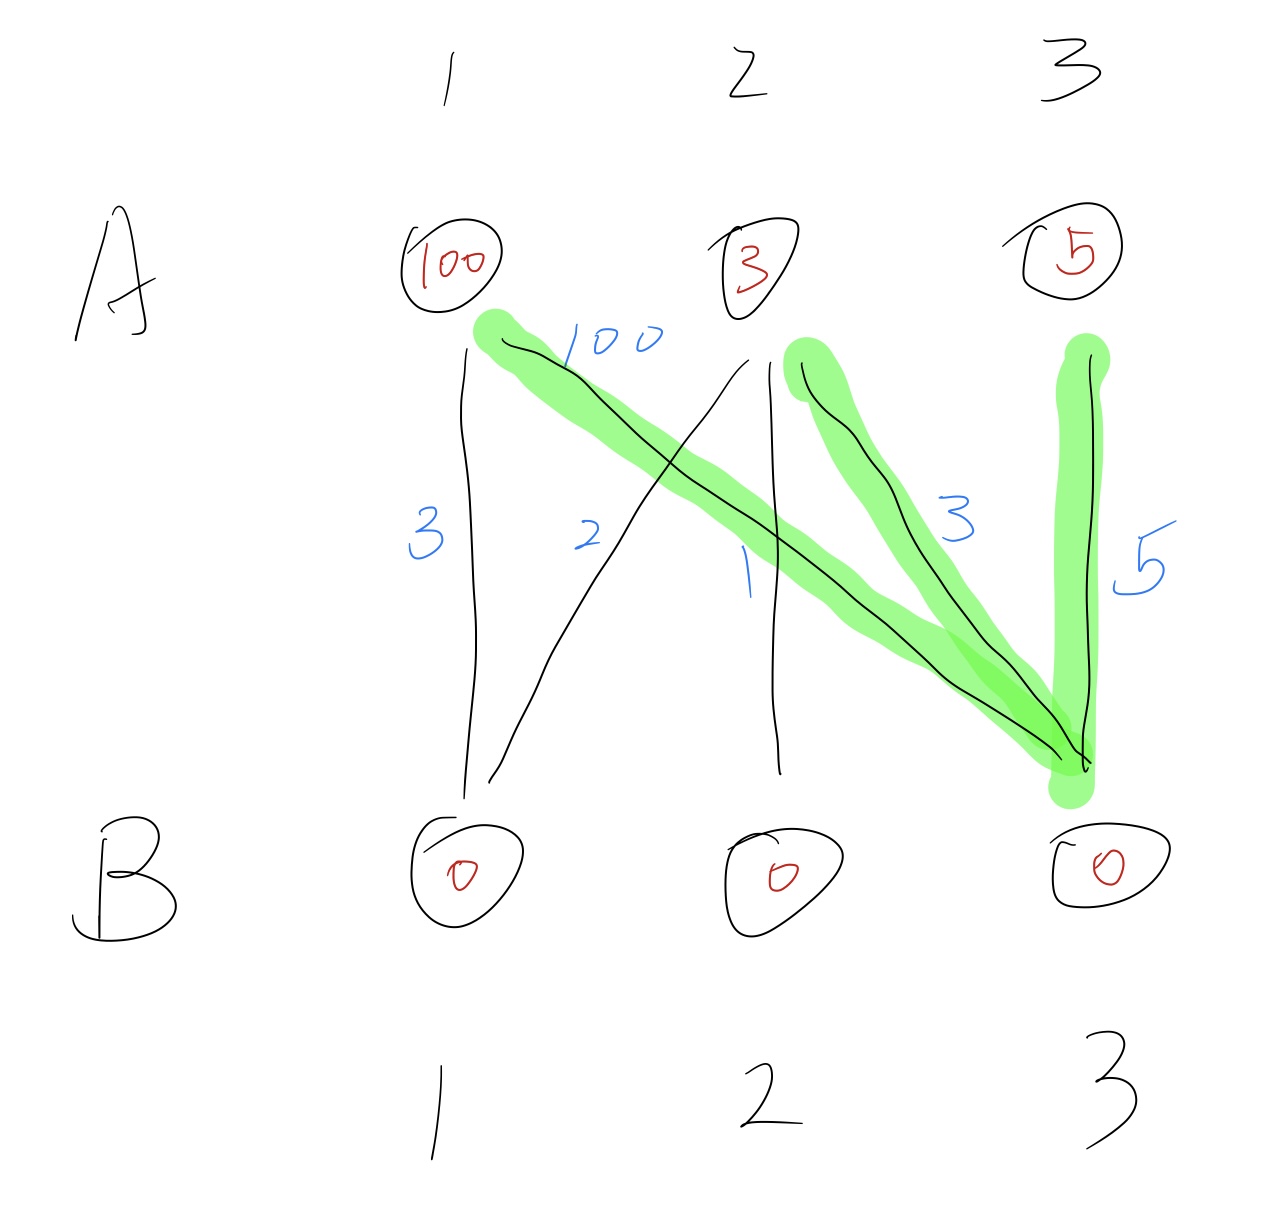 图中绿色标出的即为G的相等子图